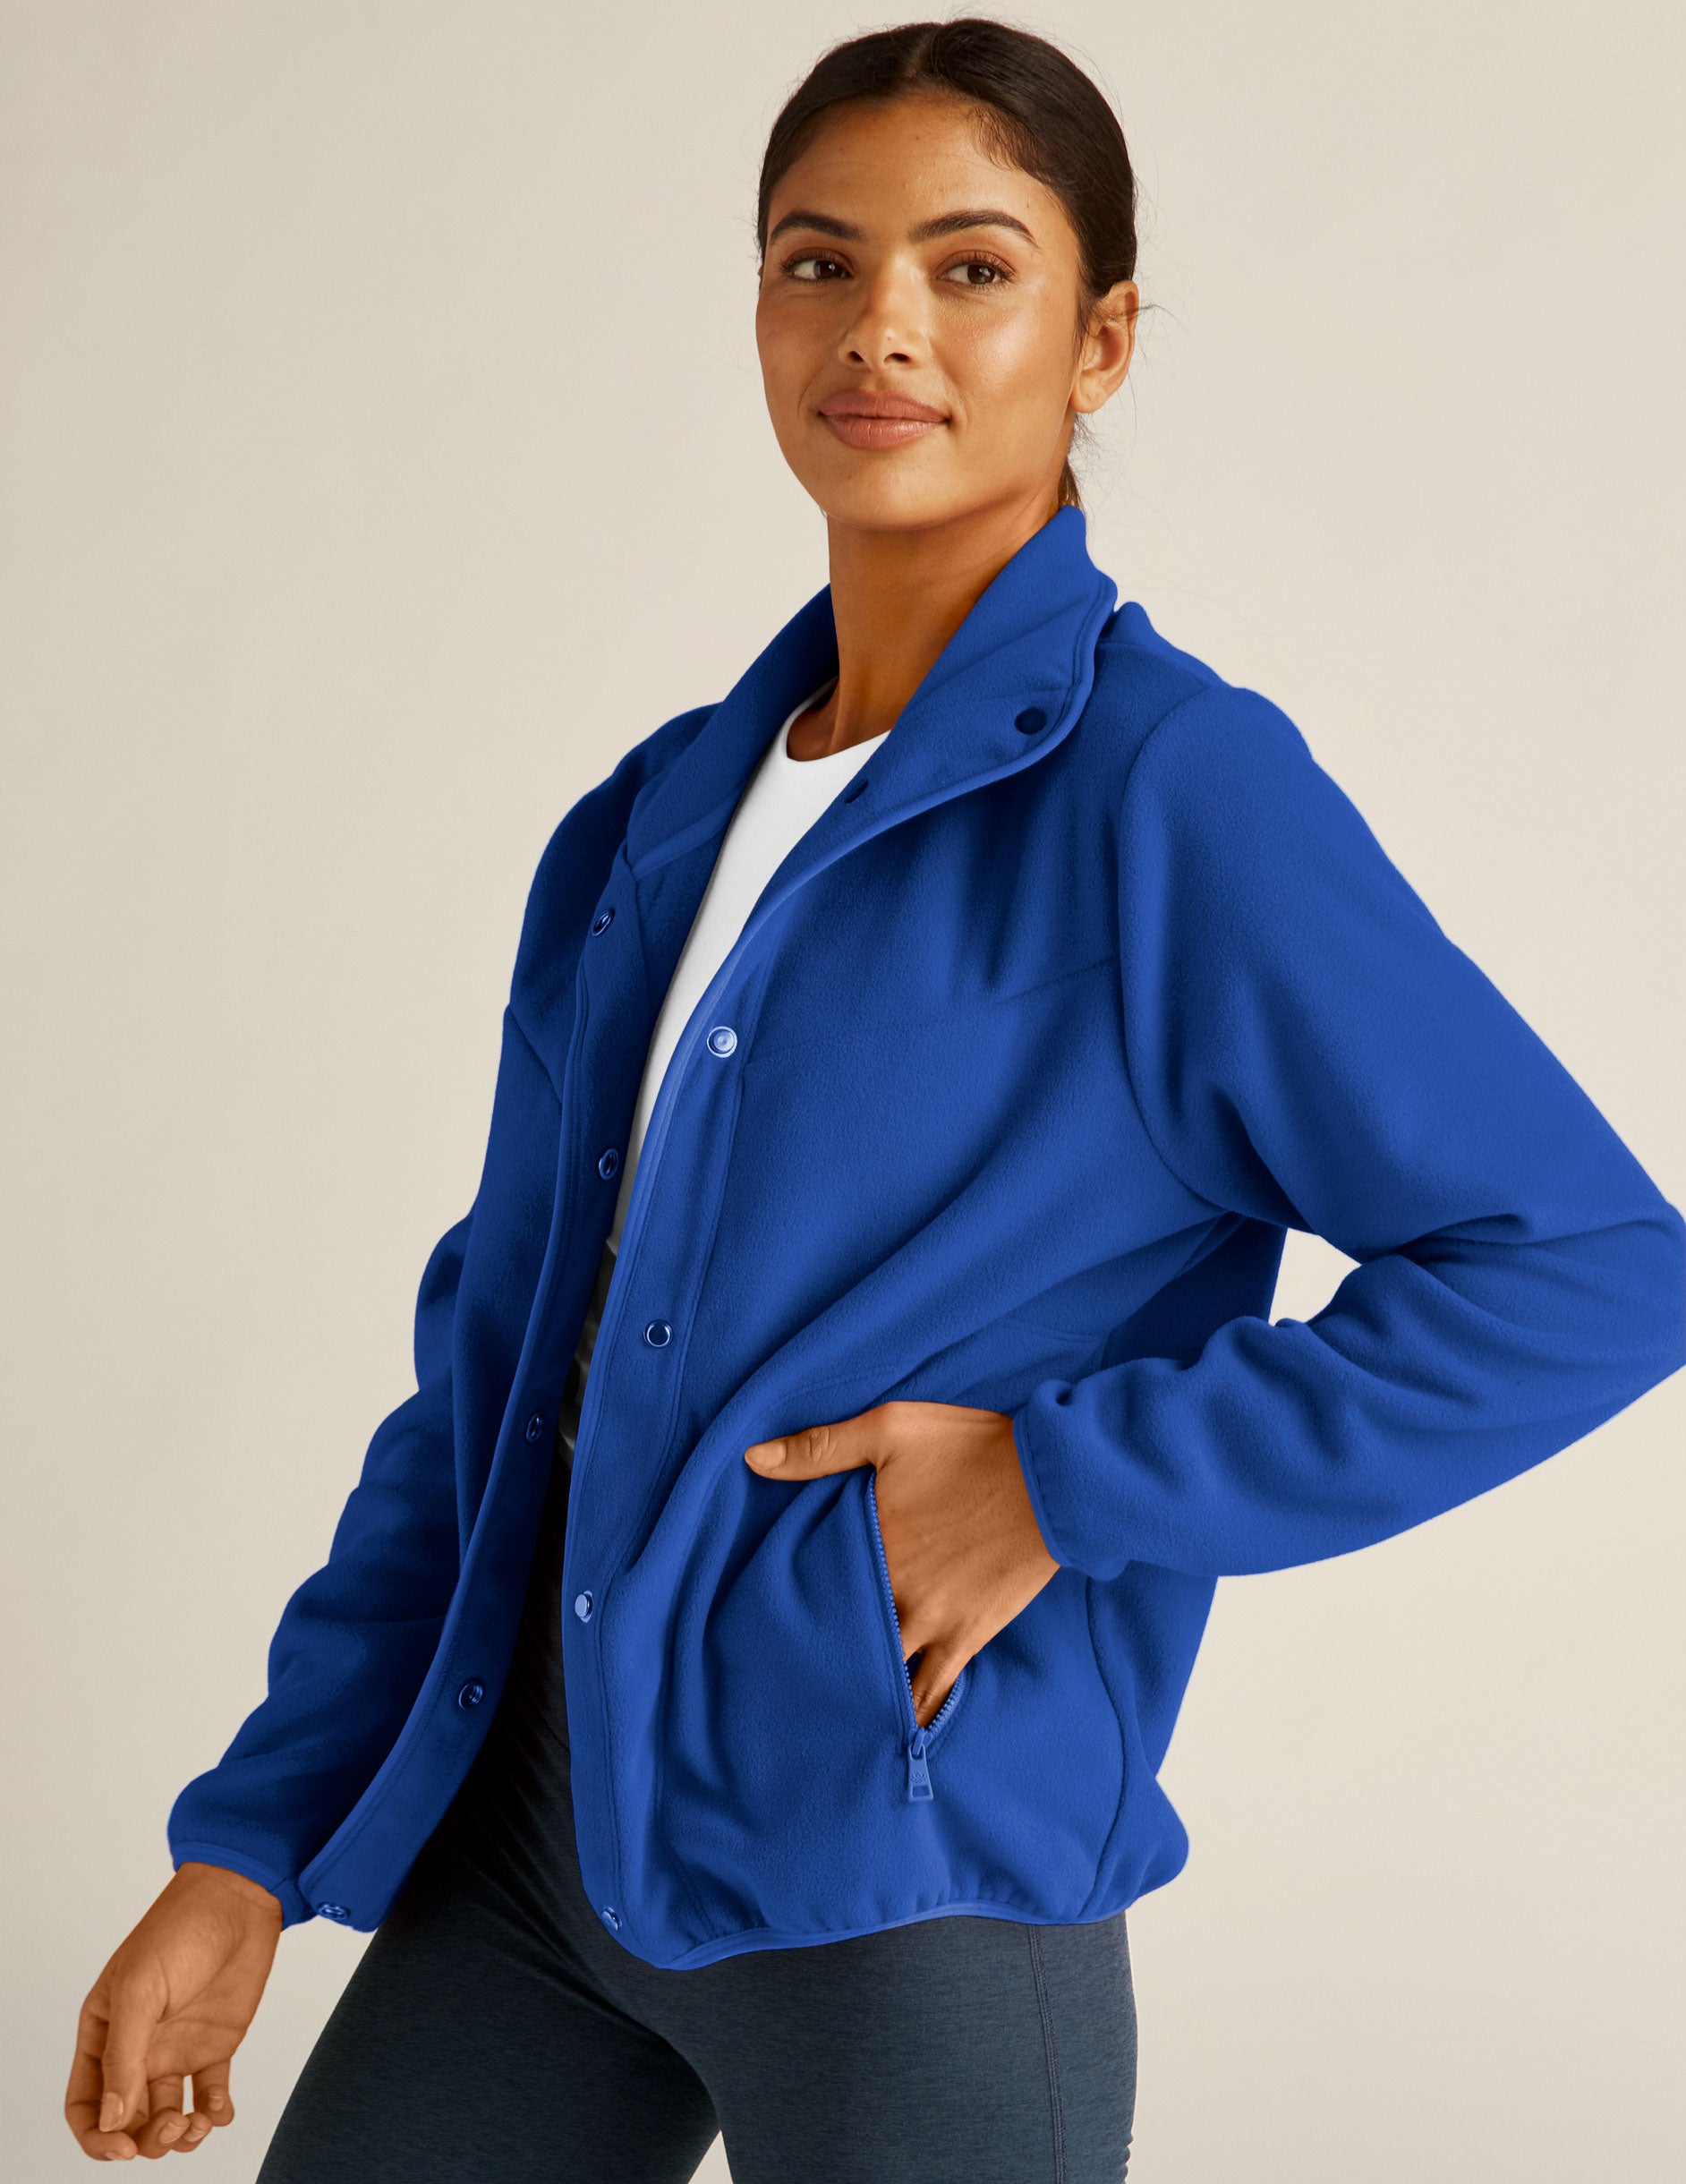 blue fleece button up jacket with zipper pockets. 